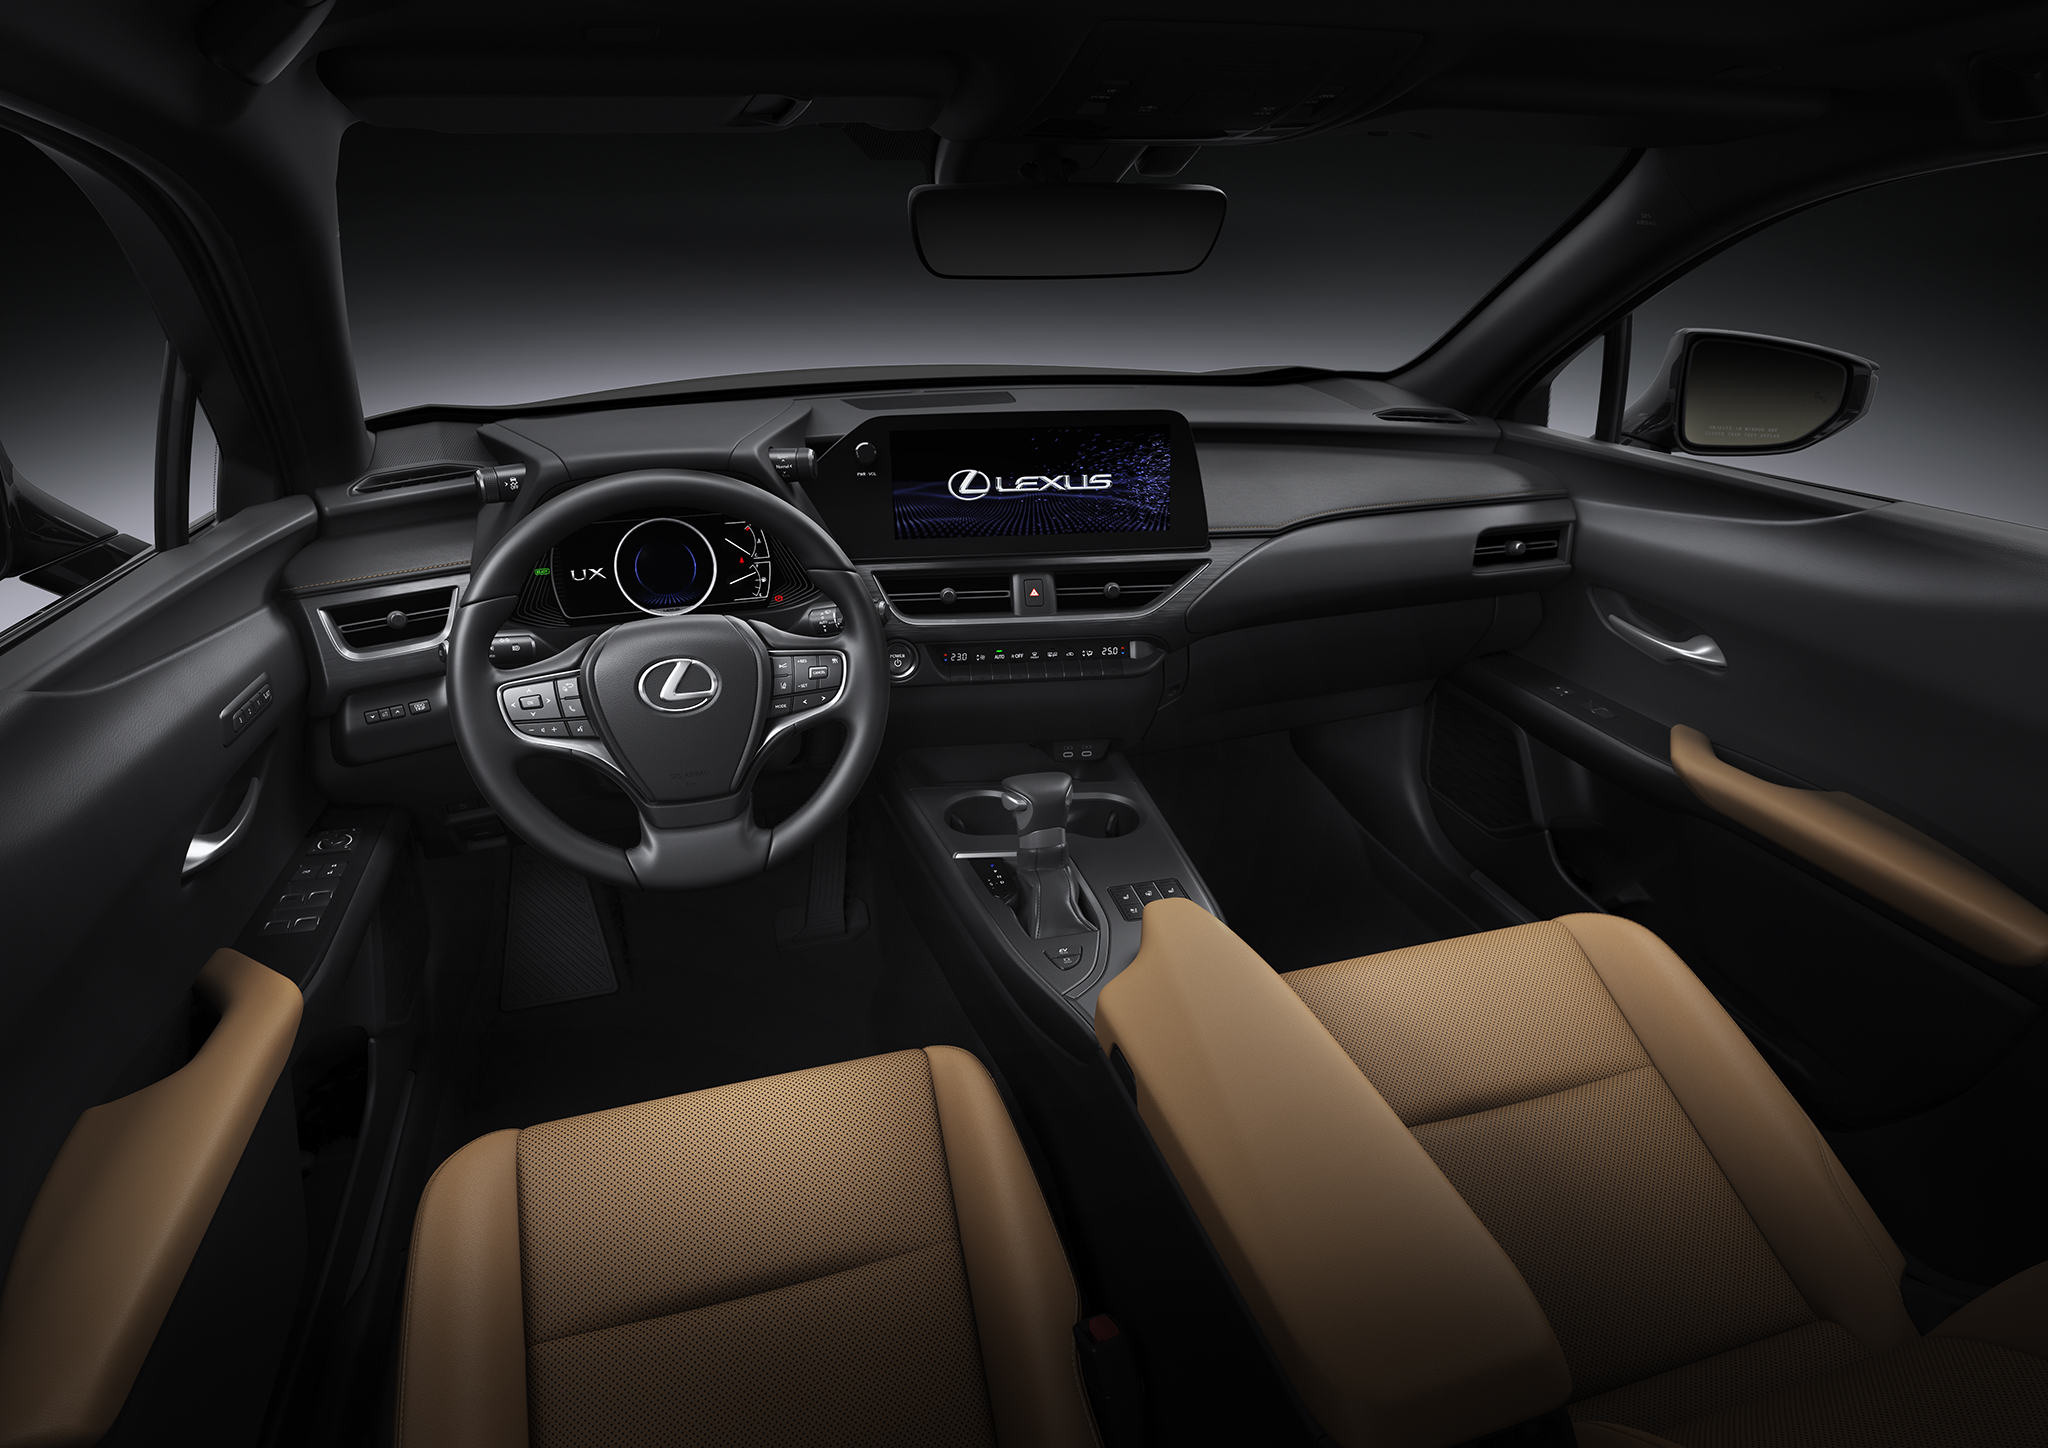 Lexus UX 2022 Update Overseas model shown